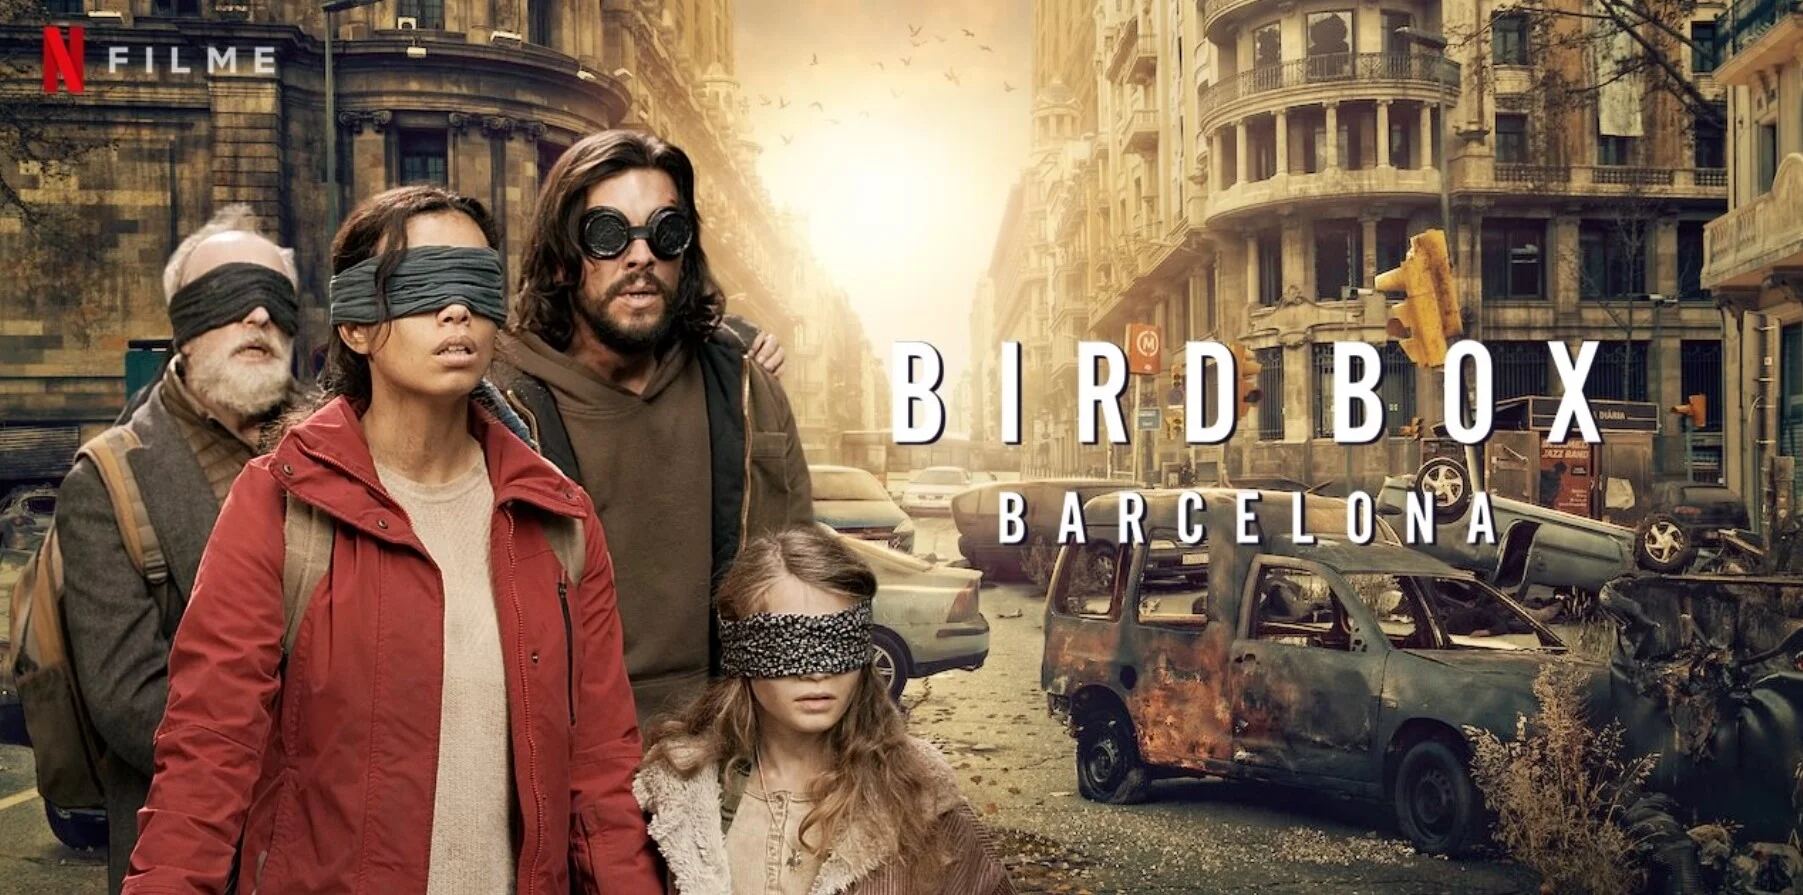 ჩიტის ყუთი: ბარსელონა / Bird Box: Barcelona (A